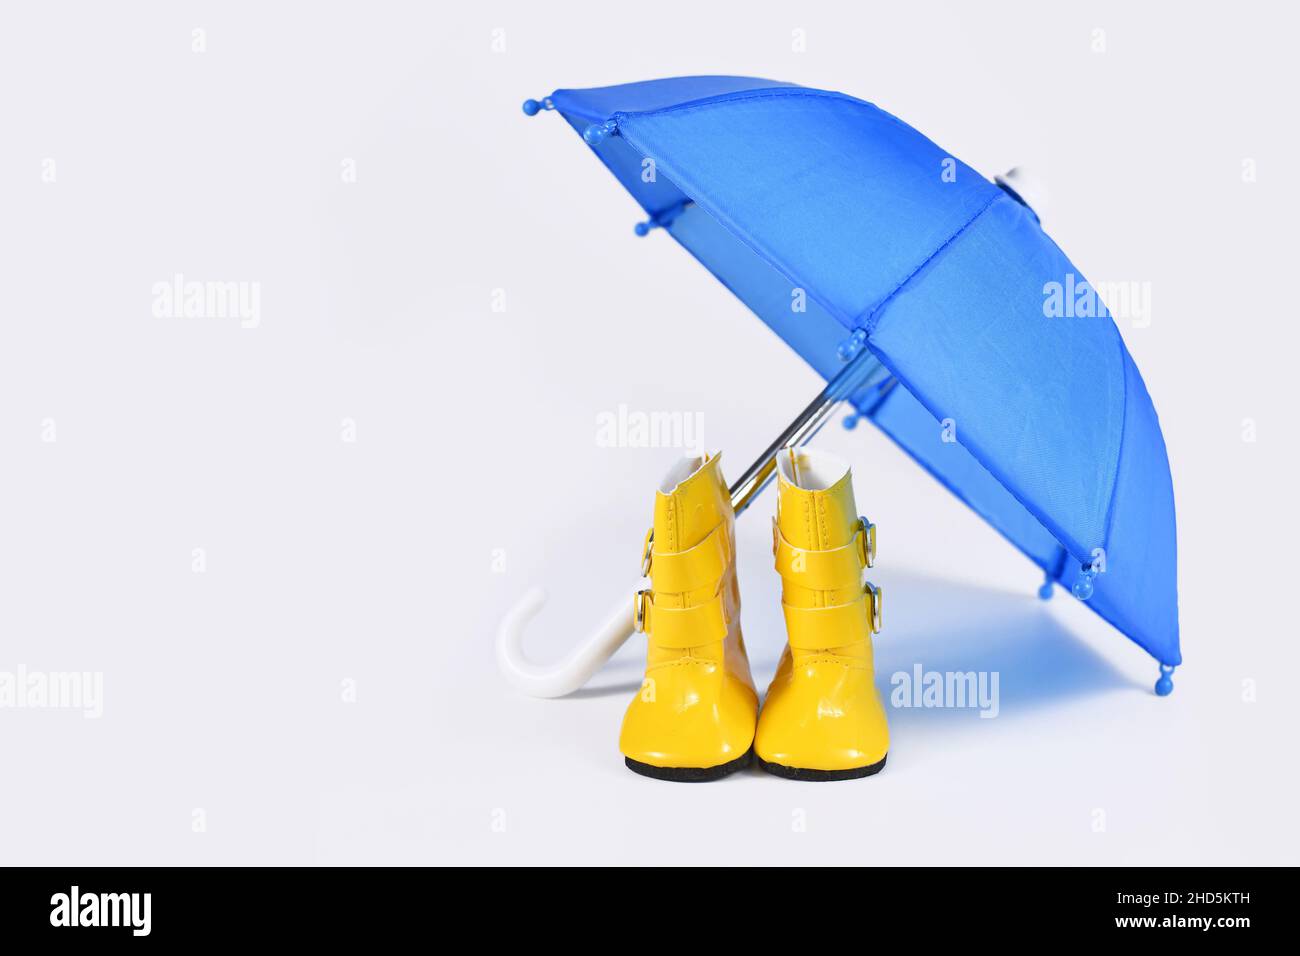 Regenkonzept mit blauem Regenschirm und gelben Gummistiefeln Stockfoto